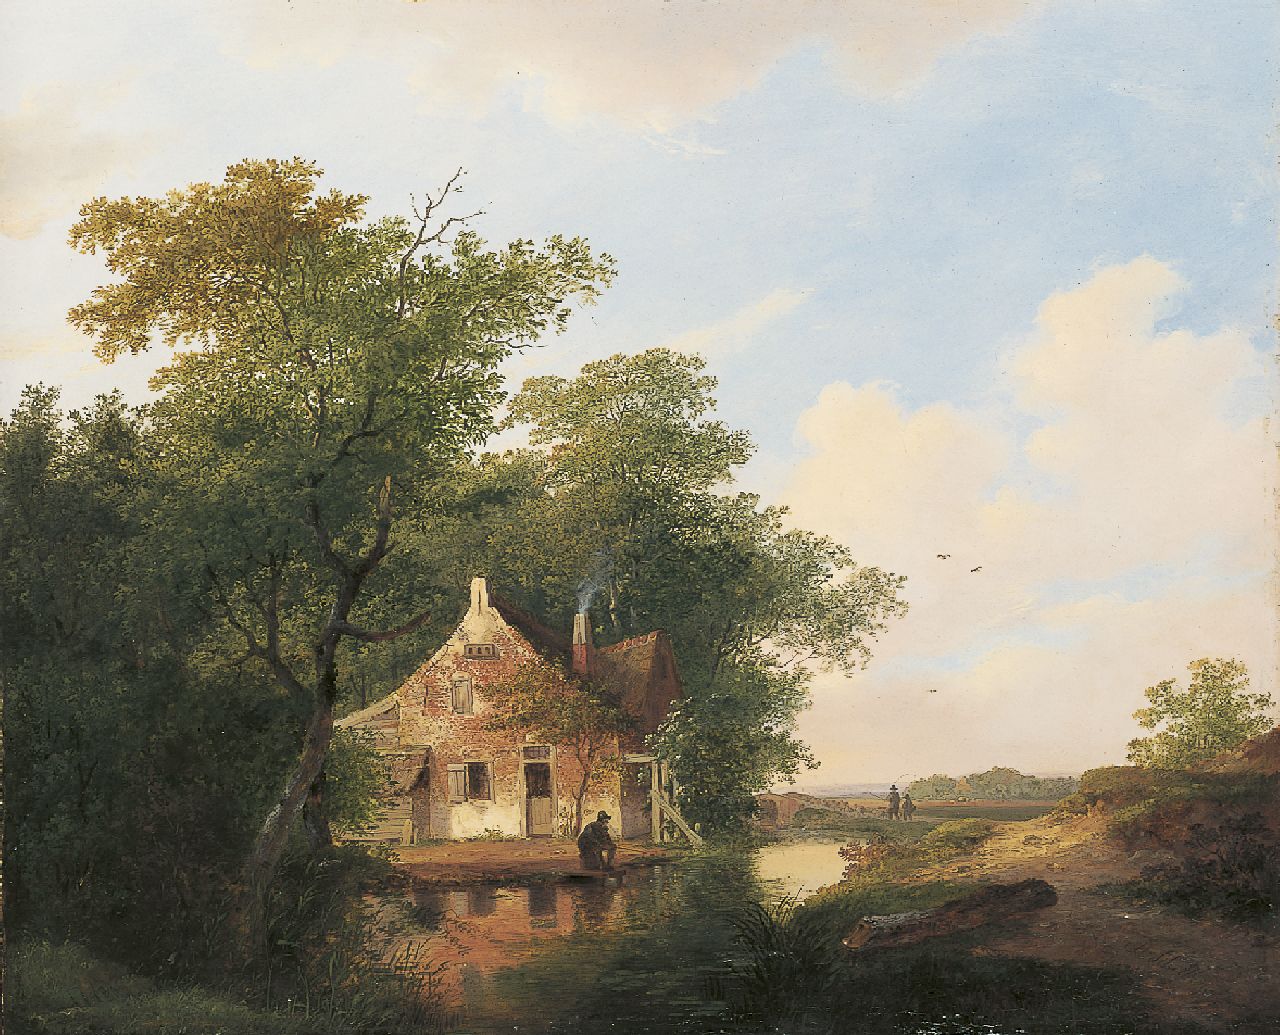 Stok J. van der | Jacobus van der Stok, Boerenhuisje met visser bij een vaart, olieverf op paneel 41,8 x 50,7 cm, gedateerd 1826